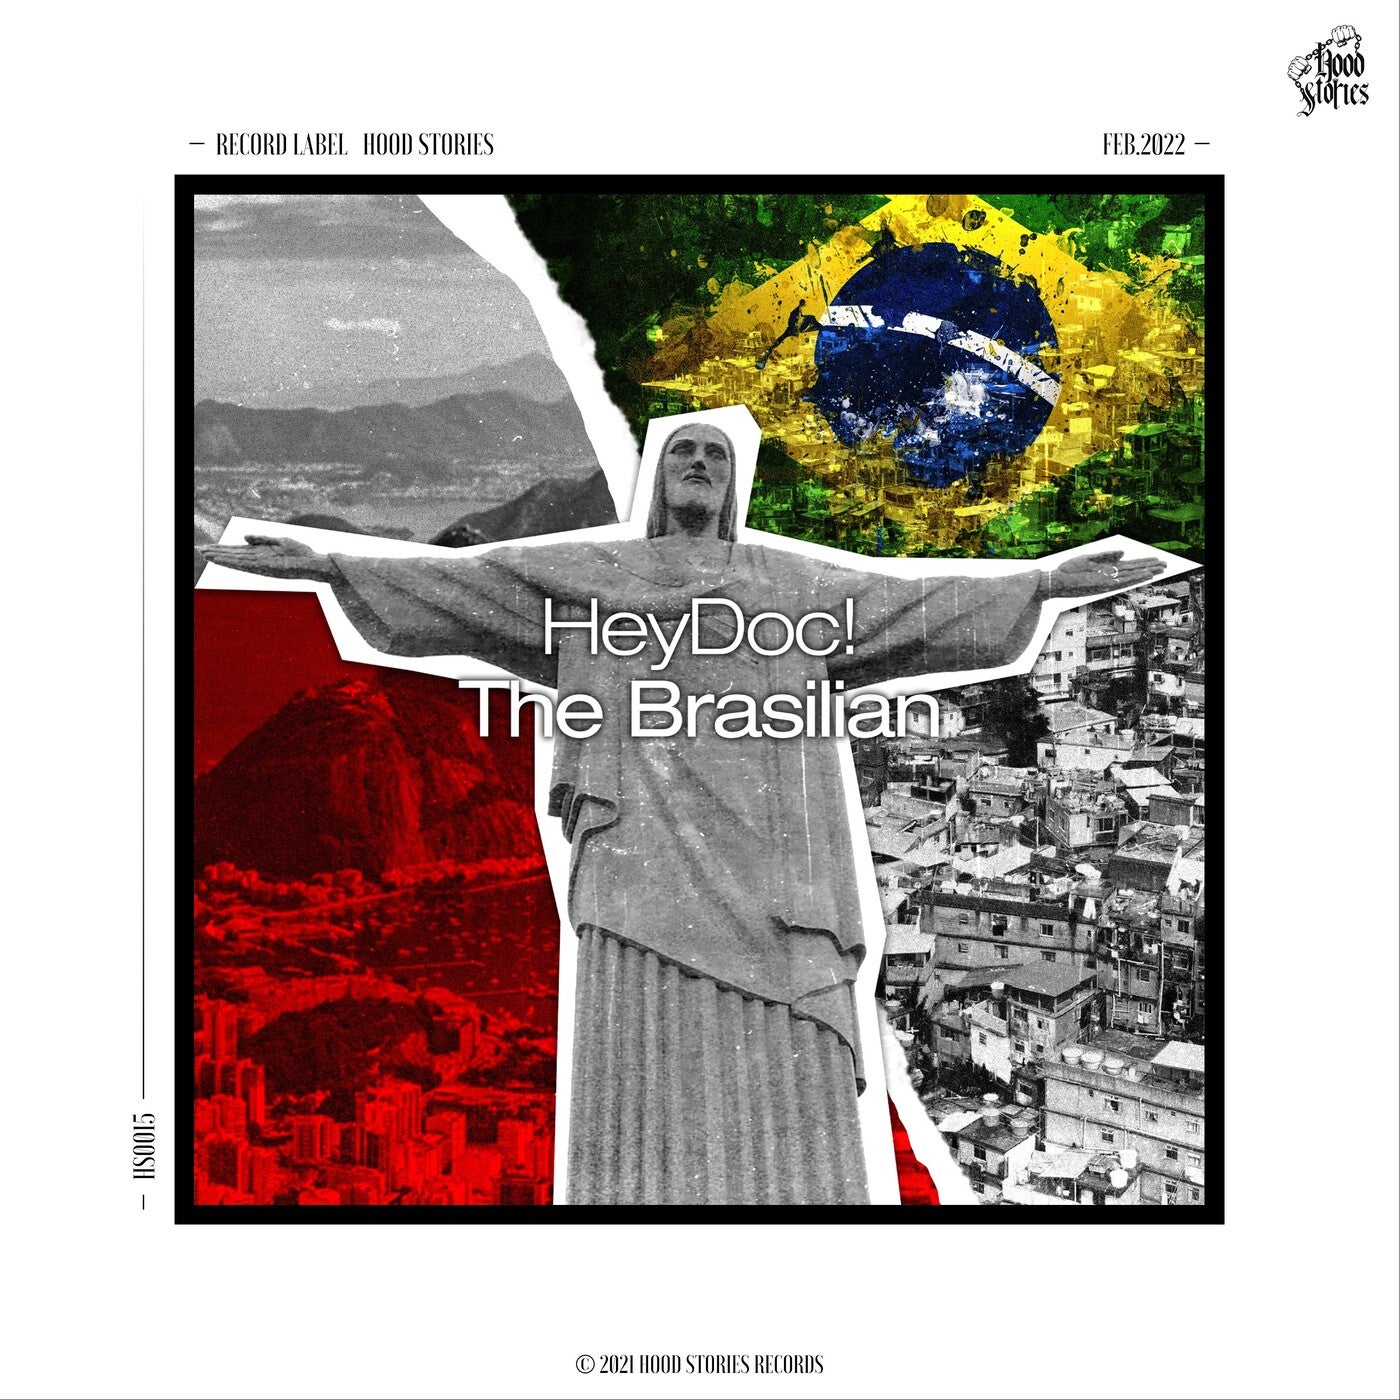 The Brasilian